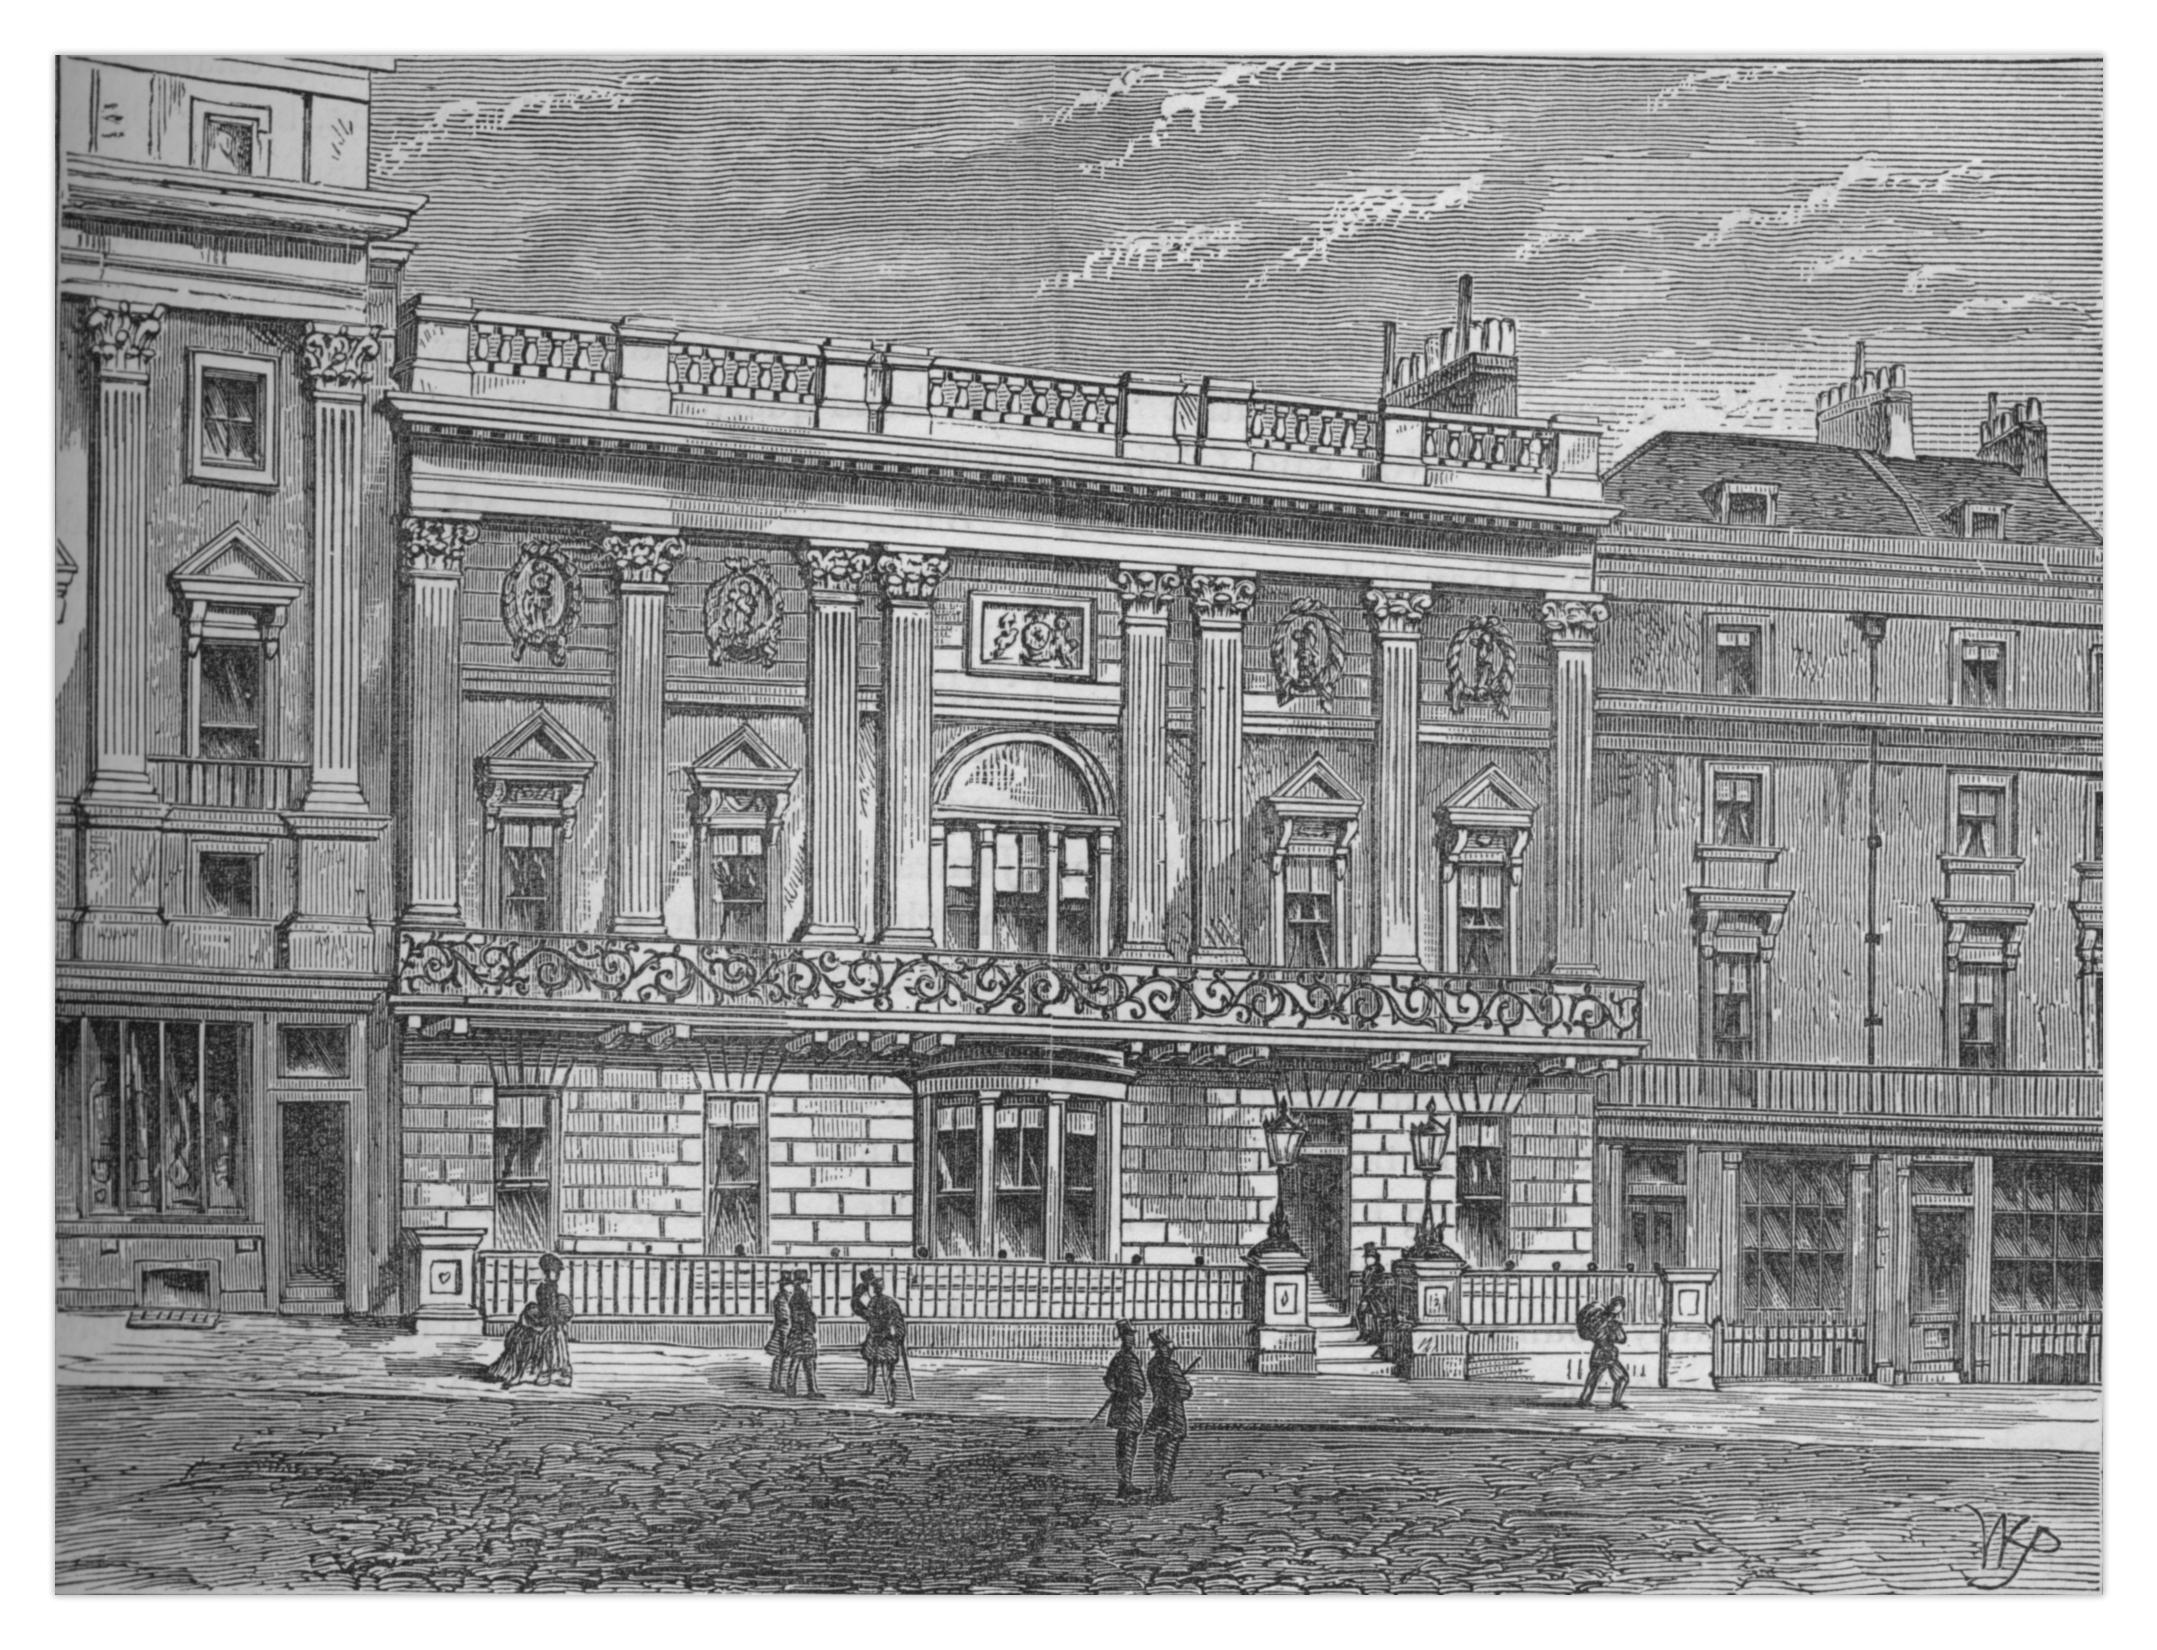 Клуб White's, Вестминстер, Лондон (около 1875), из книги Эдварда Уолфорда «Иллюстрированный старый и новый Лондон, том IV»